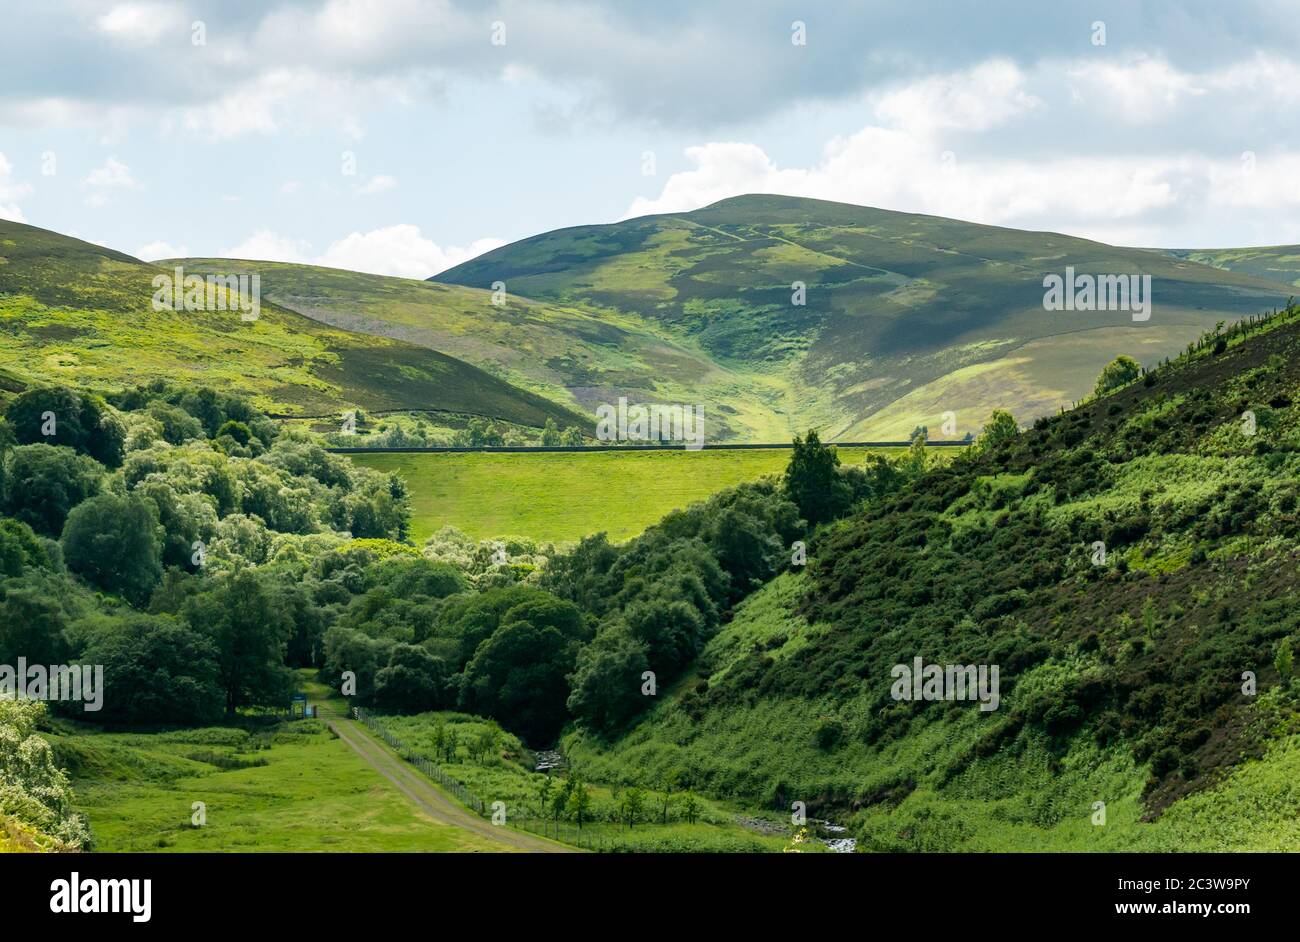 Vista de la presa de la orilla de hierba en el valle, el embalse de las esperanzas, las colinas de Lammermuir, East Lothian, Escocia, Reino Unido Foto de stock